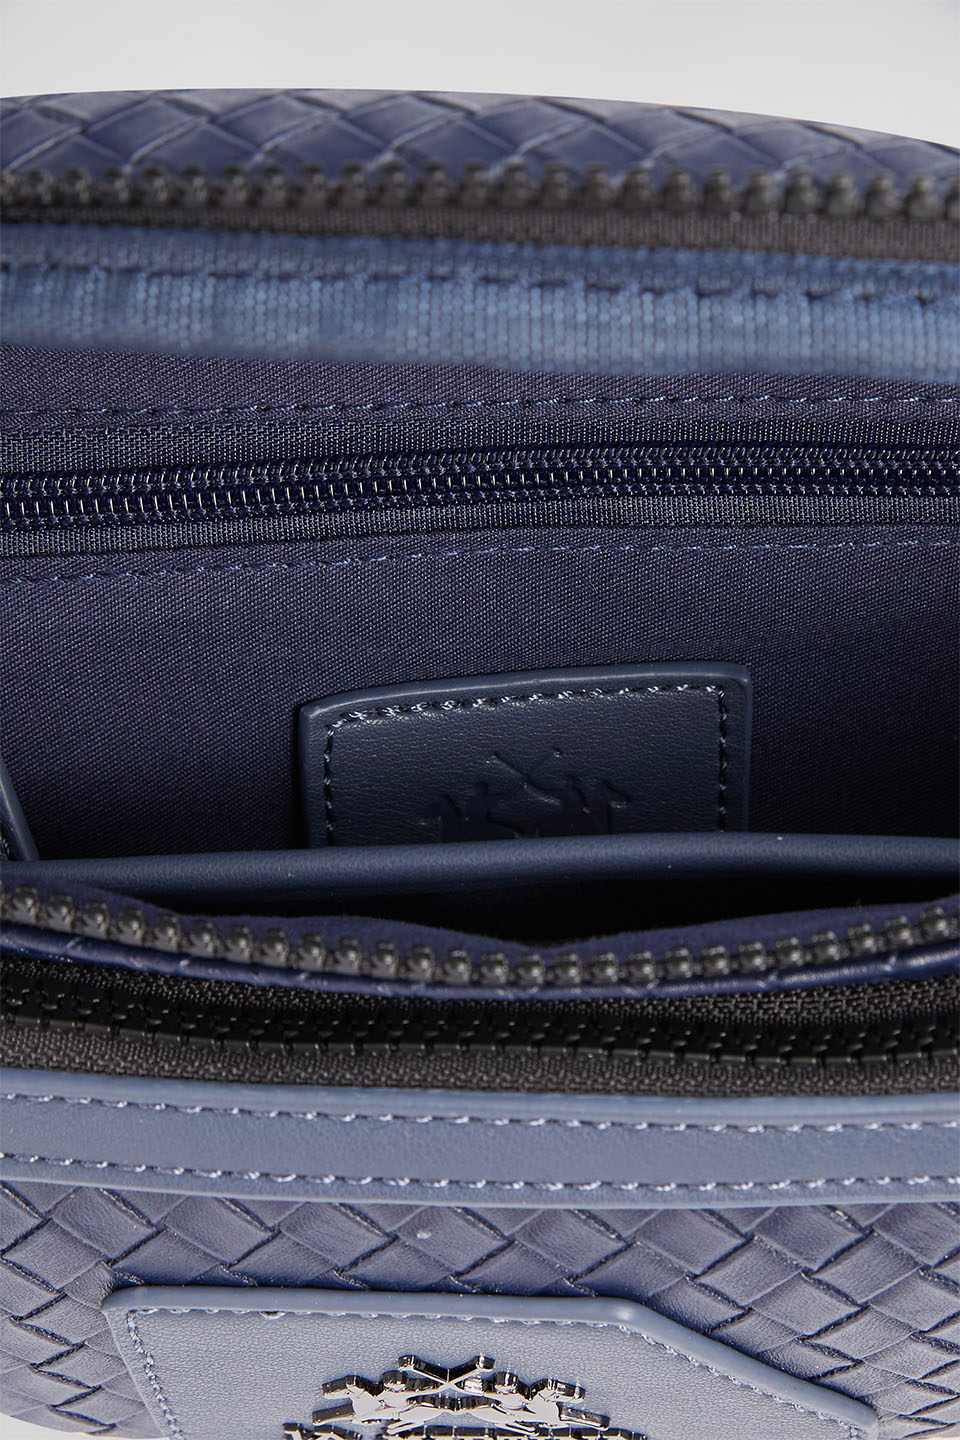 PU leather belt bag - La Martina - Official Online Shop